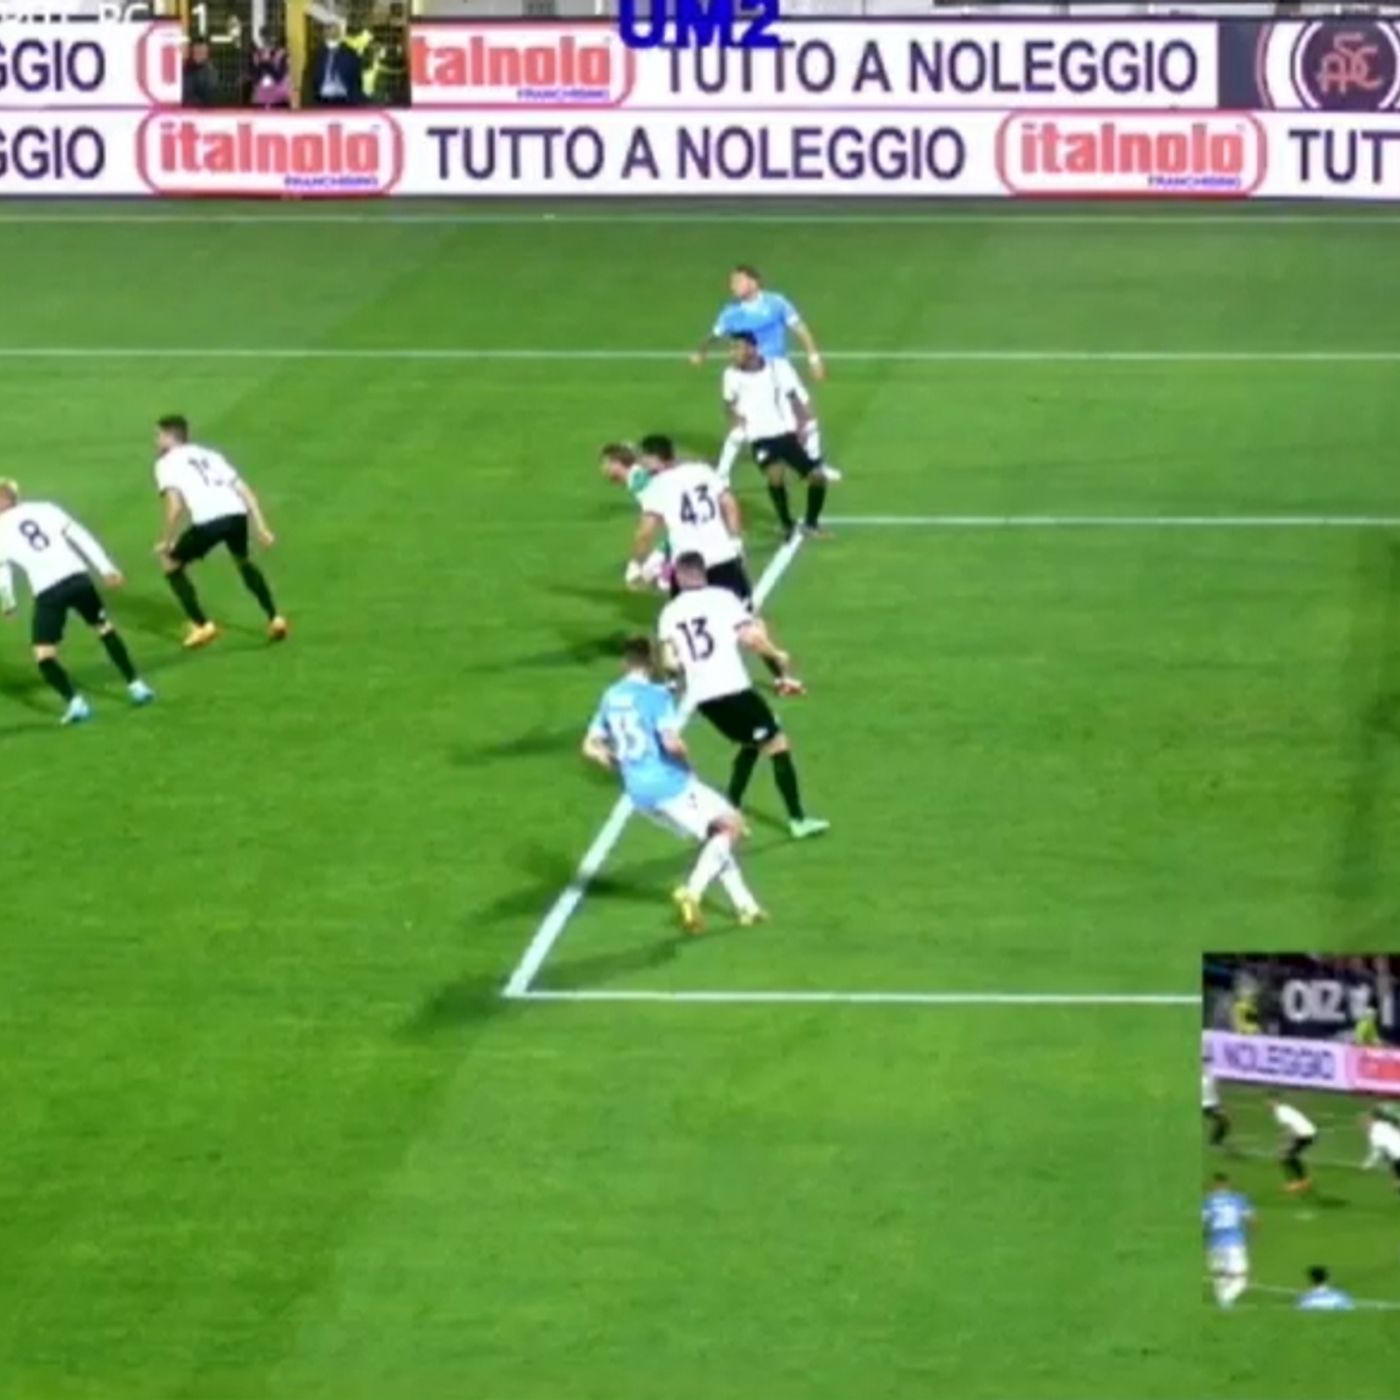 L’audio Var sul gol di Acerbi in Spezia-Lazio: “Ferma c****. Perché ha ripreso?”